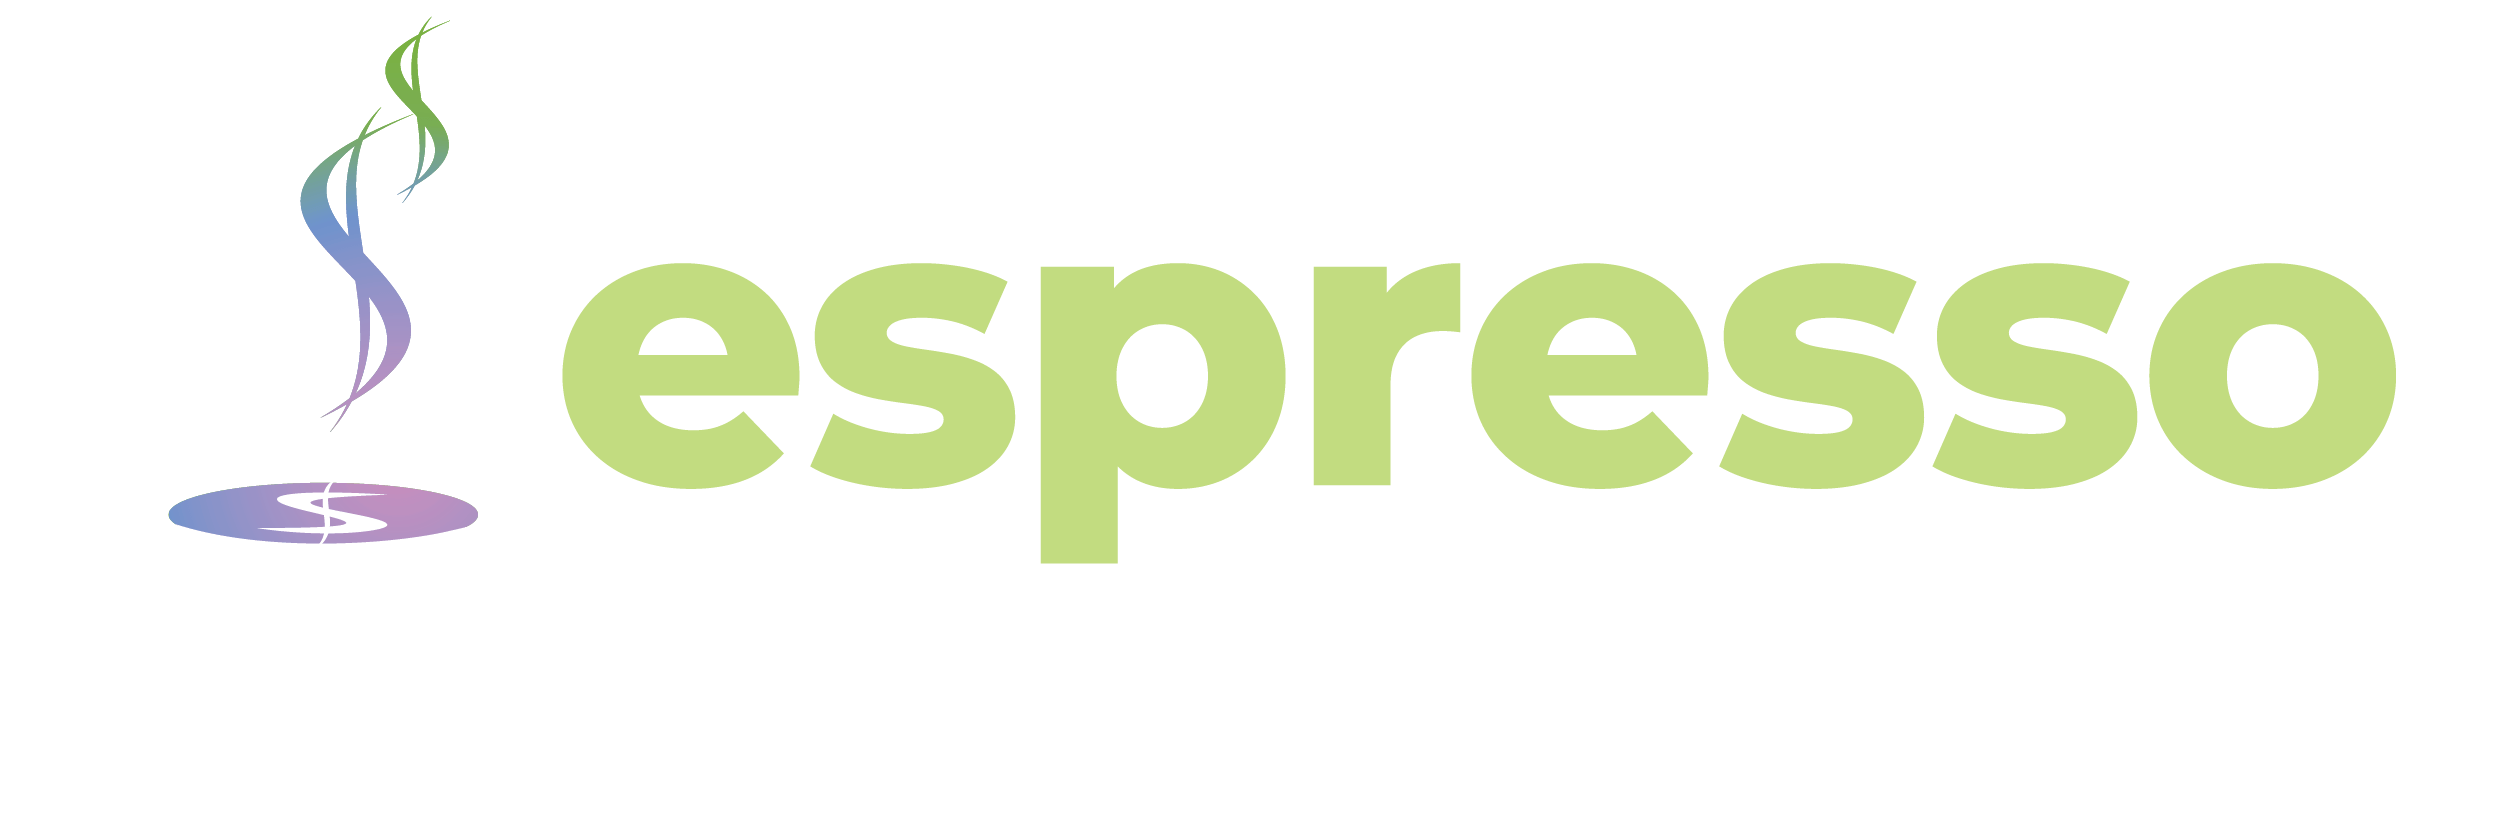 Espresso agent logo transparent